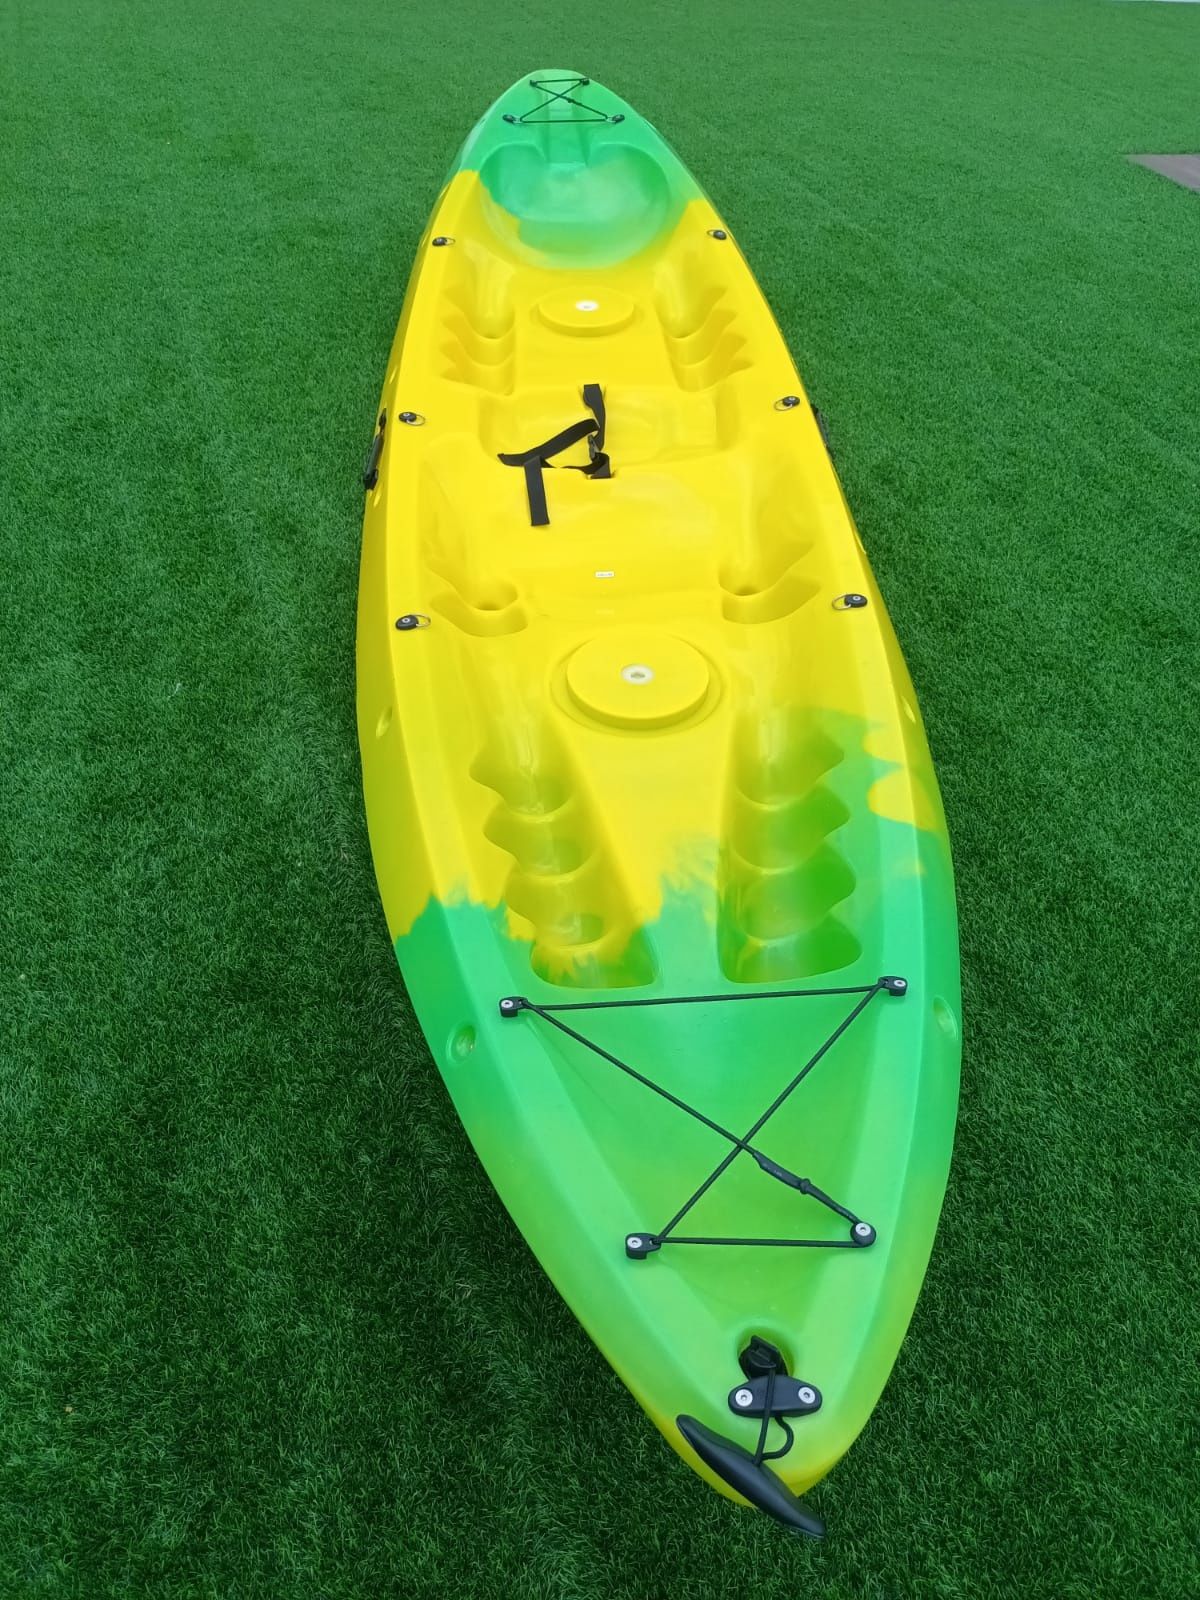 Green Tech Kayaks® | NOVOS